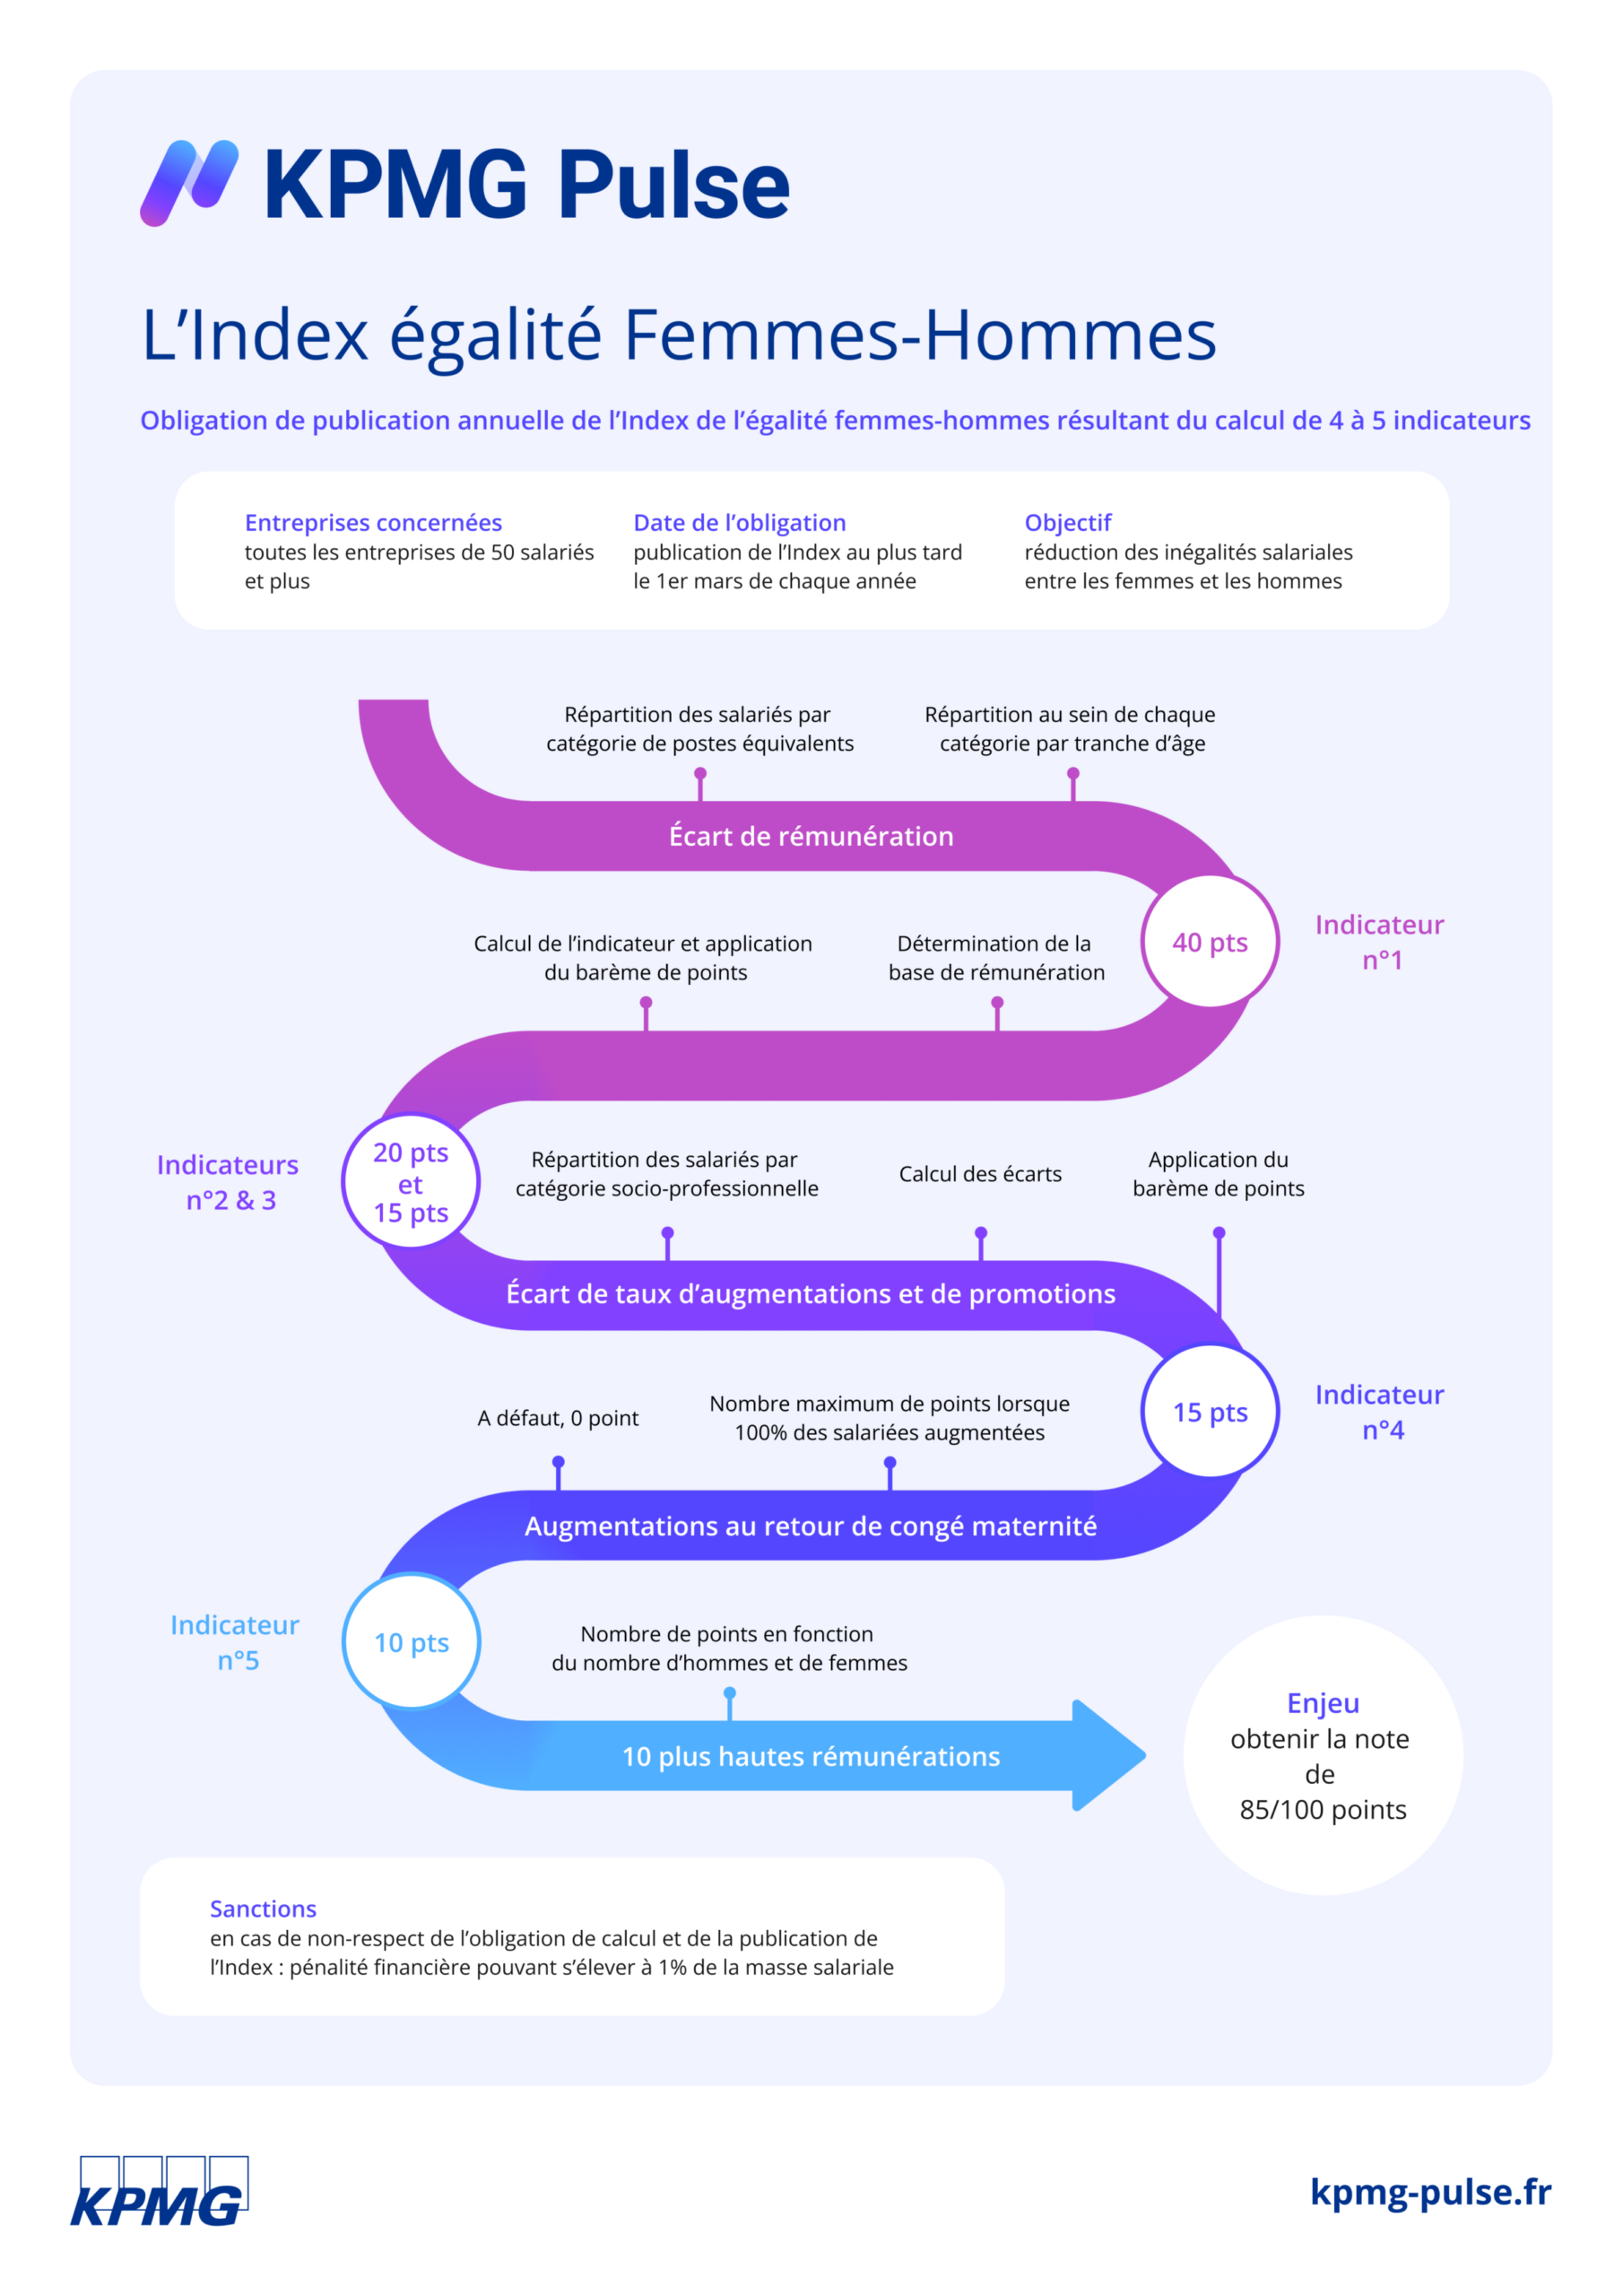 Index égalité professionnelle Homme/Femme